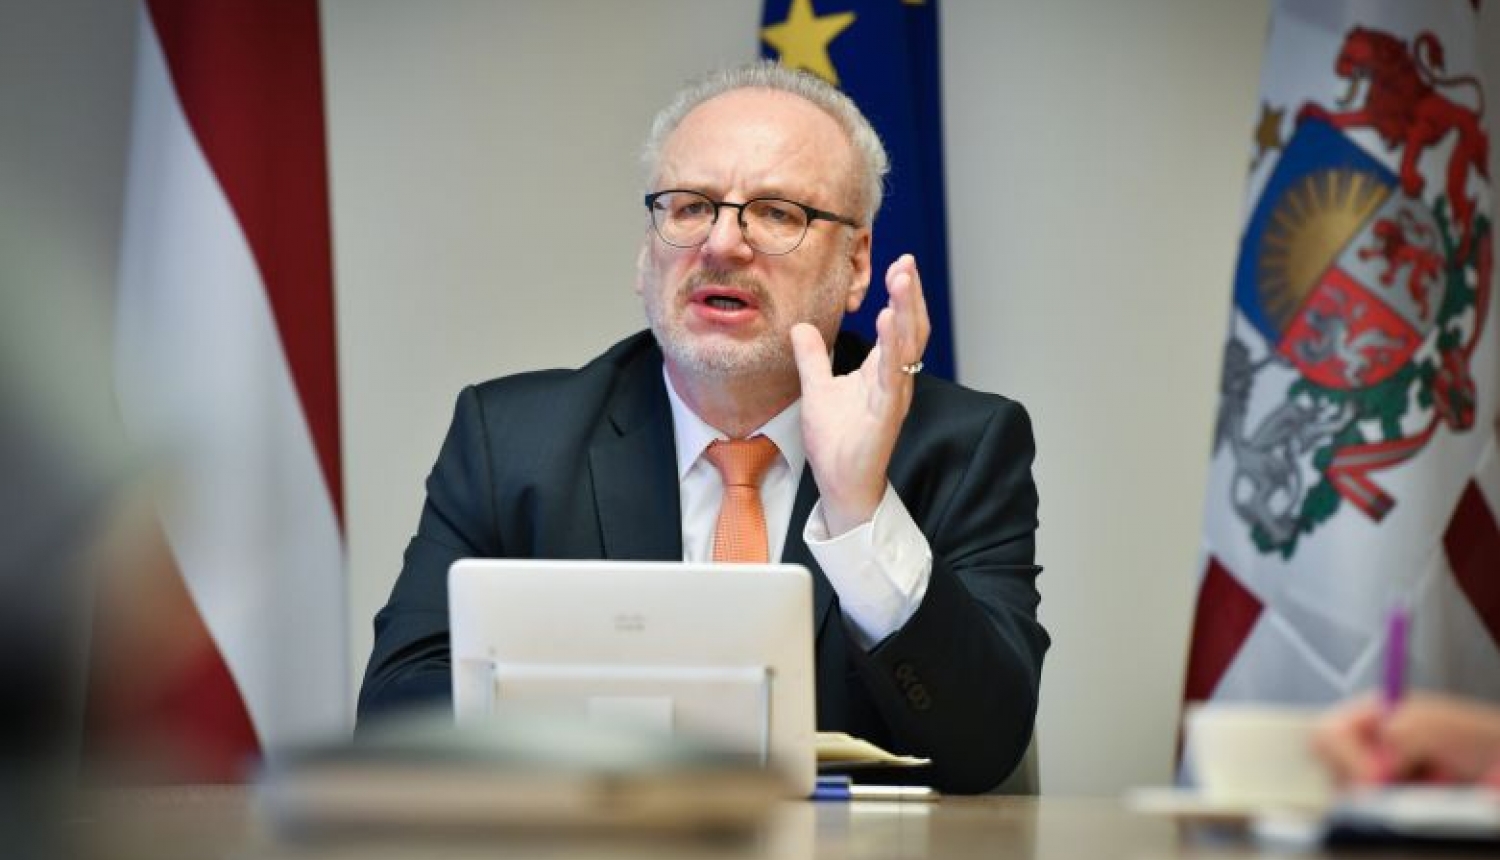 Valsts prezidents un Saeimas Eiropas lietu komisija: arī krīzes laikā jāsaglabā ES vērtības un tiesiskums